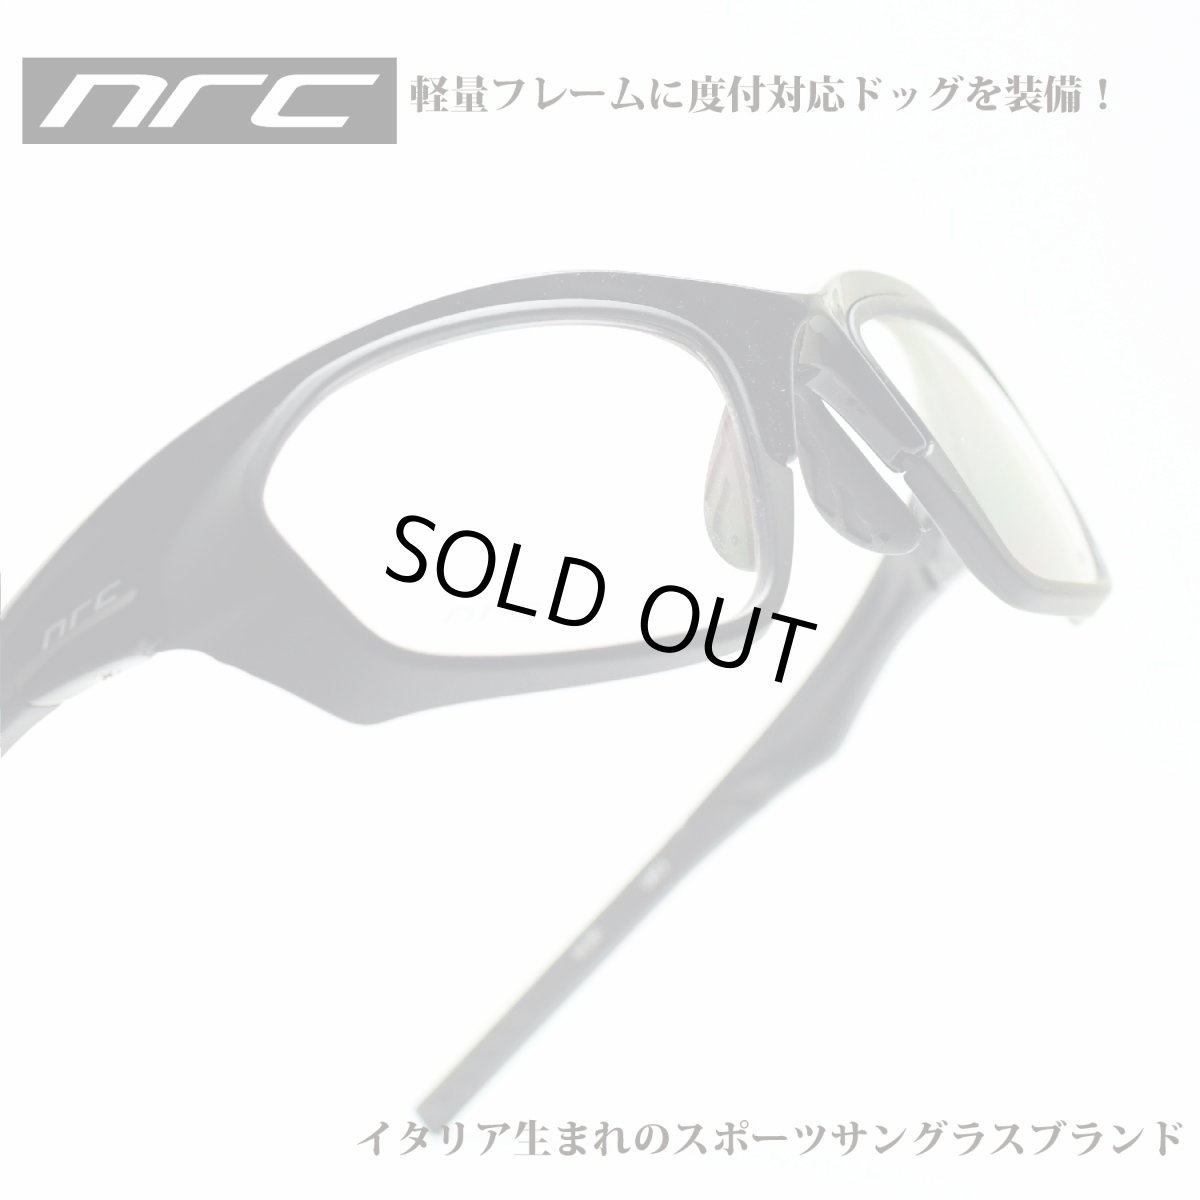 画像1: nrc エヌアールシー S5 SHINY BLACK/OPTICAL DOC  メガネ 眼鏡 めがね メンズ レディース おしゃれ ブランド 人気 おすすめ フレーム 流行り 度付き レンズ サングラス (1)